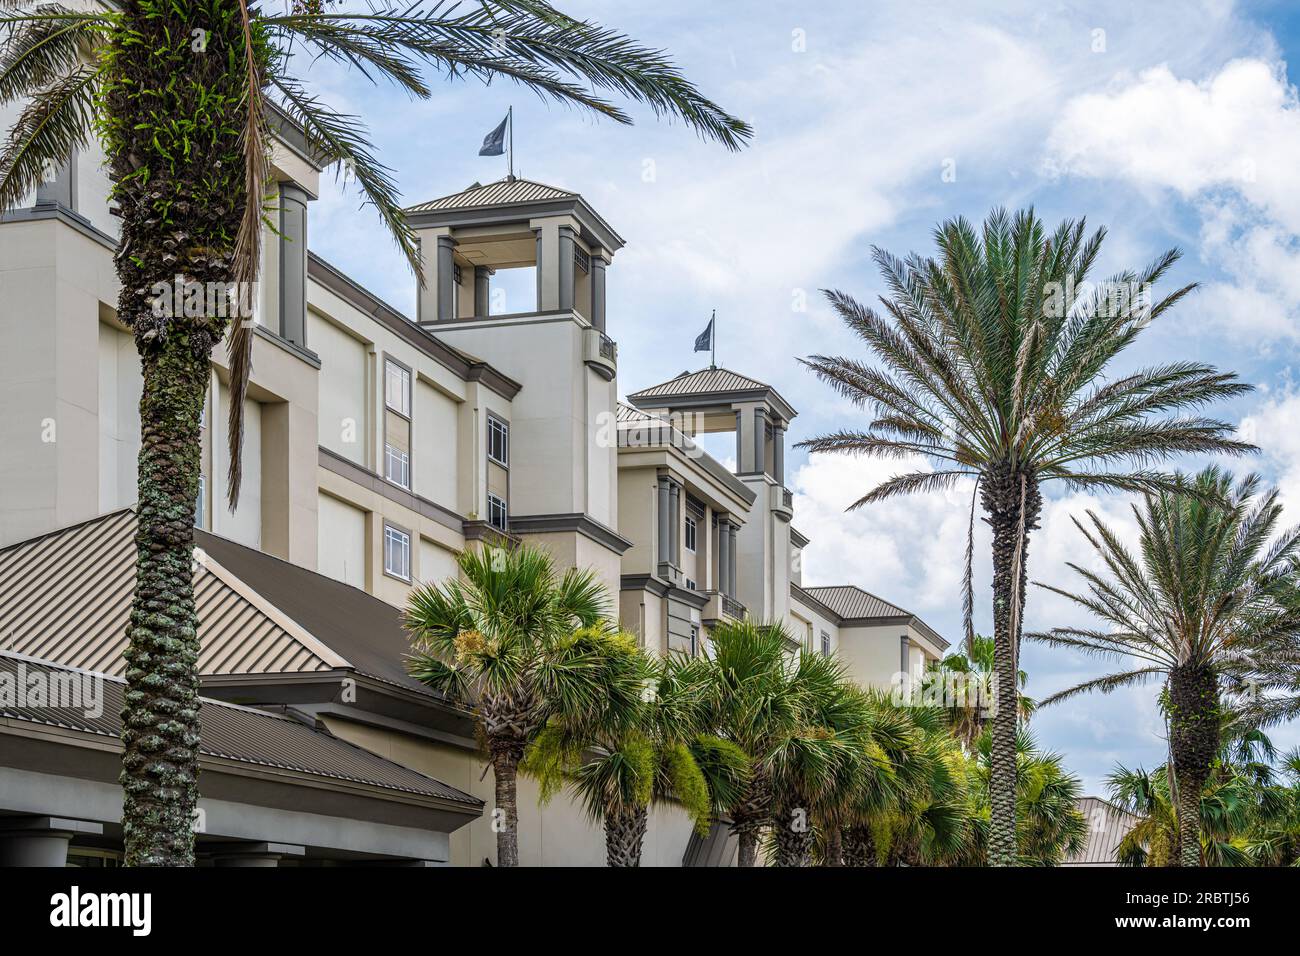 Ritz-Carlton Luxusresort am Meer auf Amelia Island im Nordosten Floridas. (USA) Stockfoto